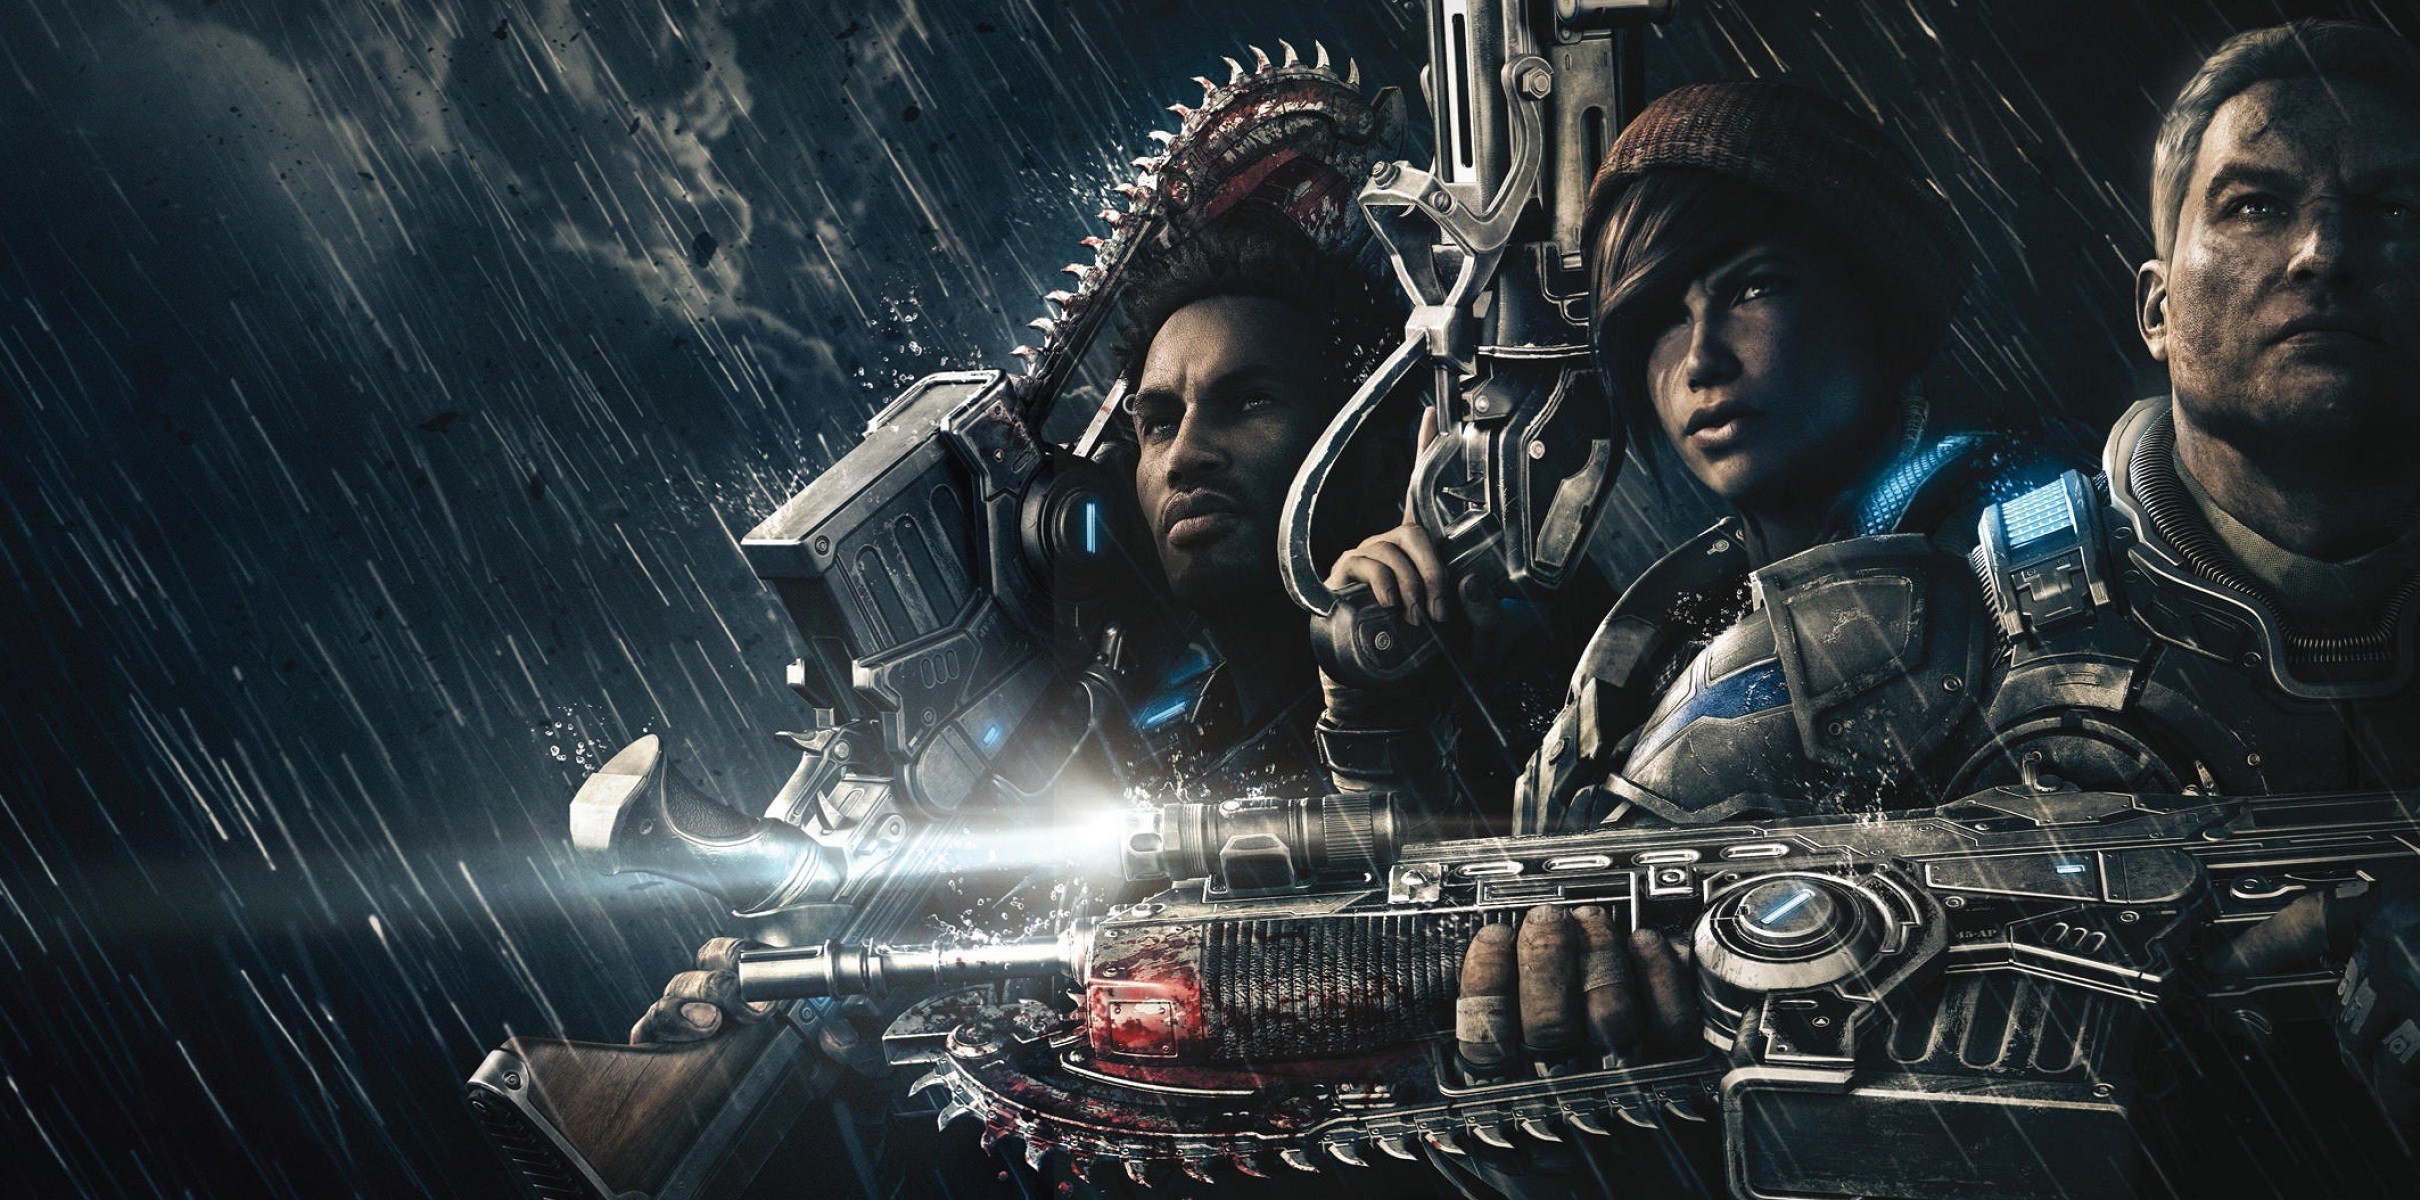 fondo de pantalla de gears of war 4,juego de acción y aventura,película,cg artwork,juego de pc,película de acción